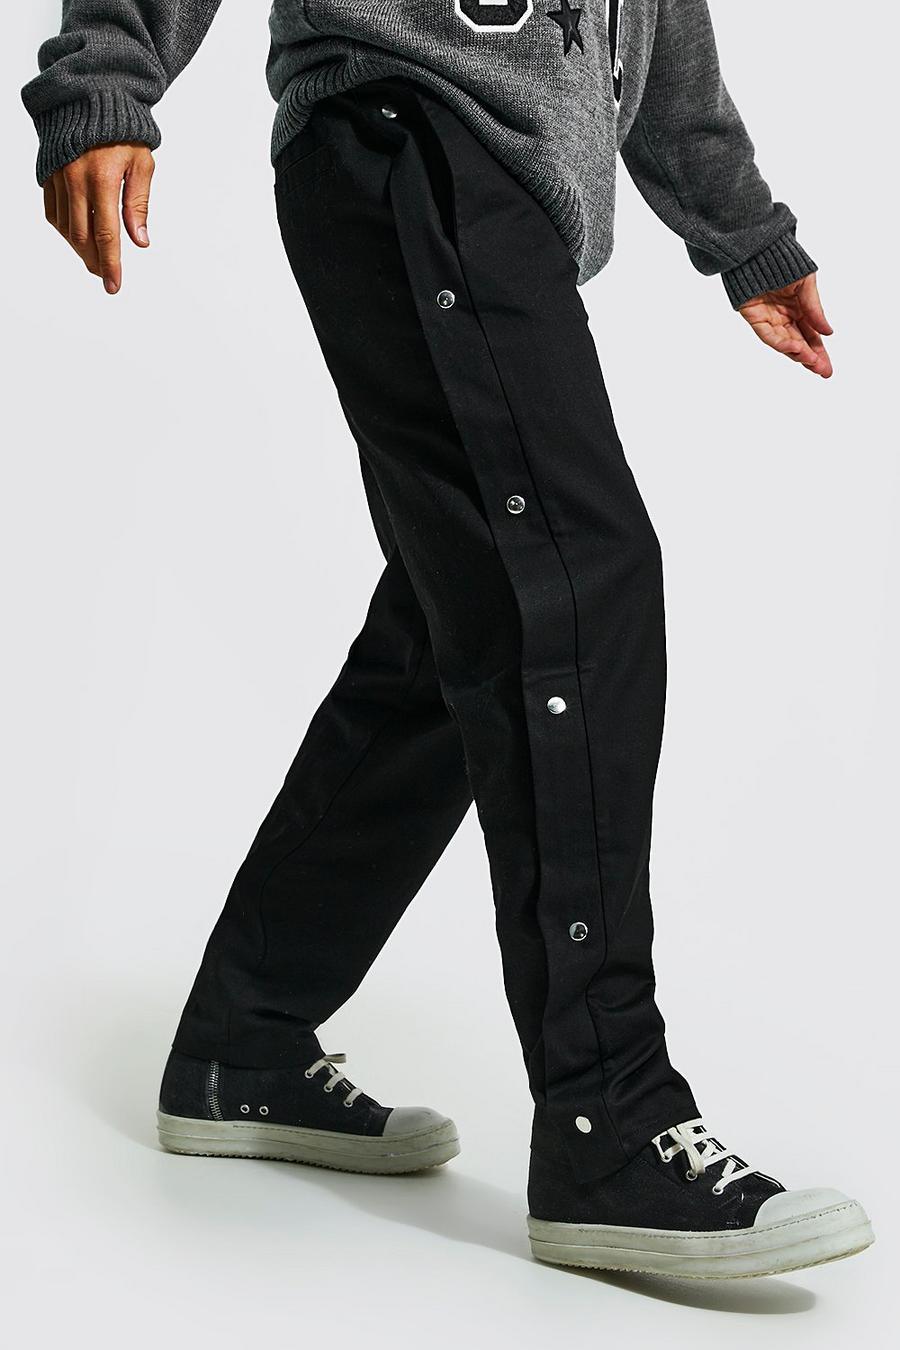 שחור negro מכנסי טוויל בגזרה ישרה עם תיקתקים